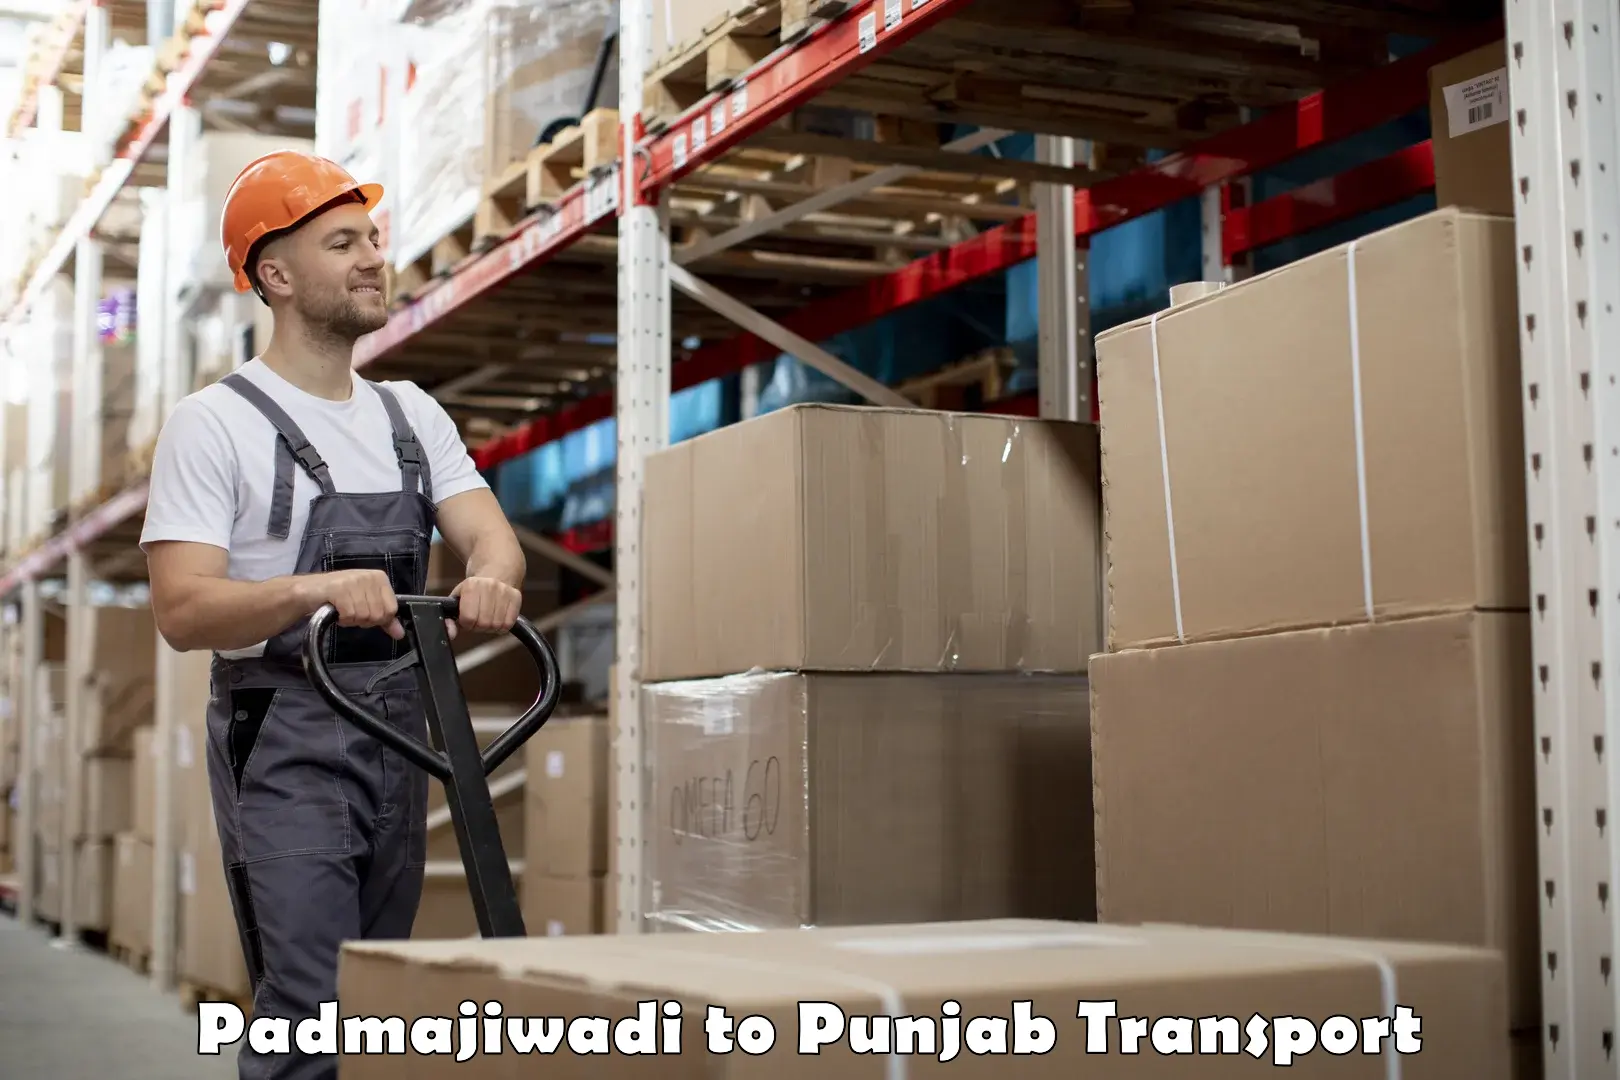 Delivery service Padmajiwadi to Punjab